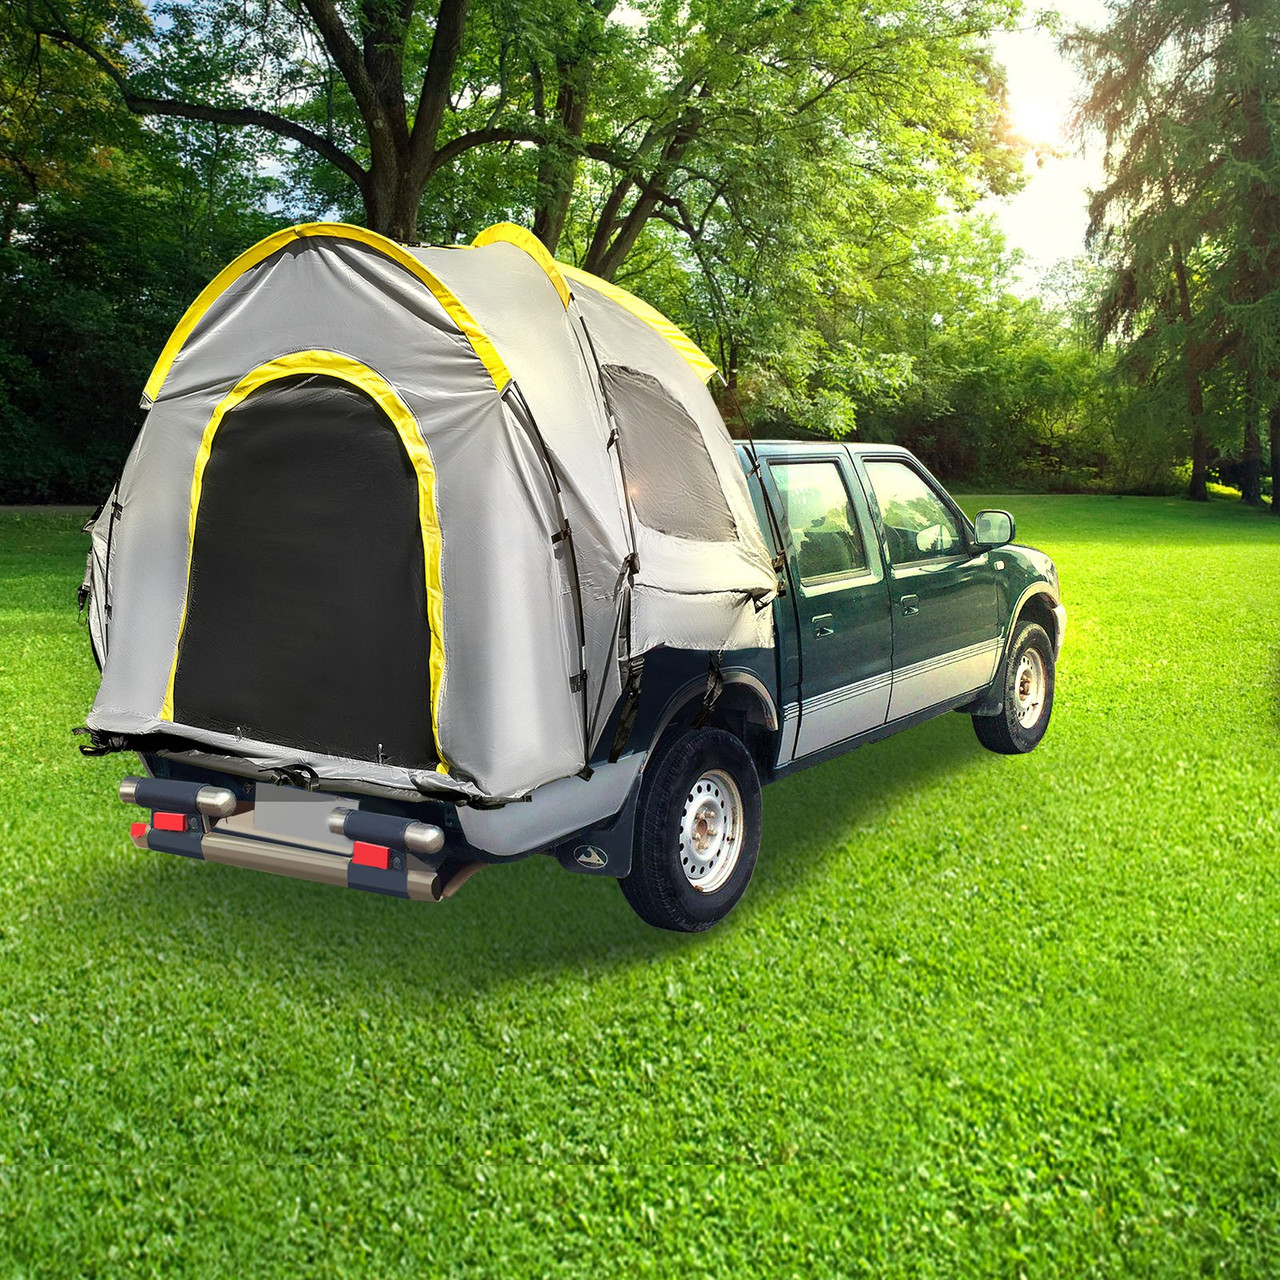 Truck Tent Standard 6.5 Truck Bed Tent, Pickup Tent, Waterproof Truck Camper, 2-Person Sleeping Capacity, 2 Mesh Windows, Easy To Setup Truck Tents For Camping, Hiking, Fishing, Grey Color